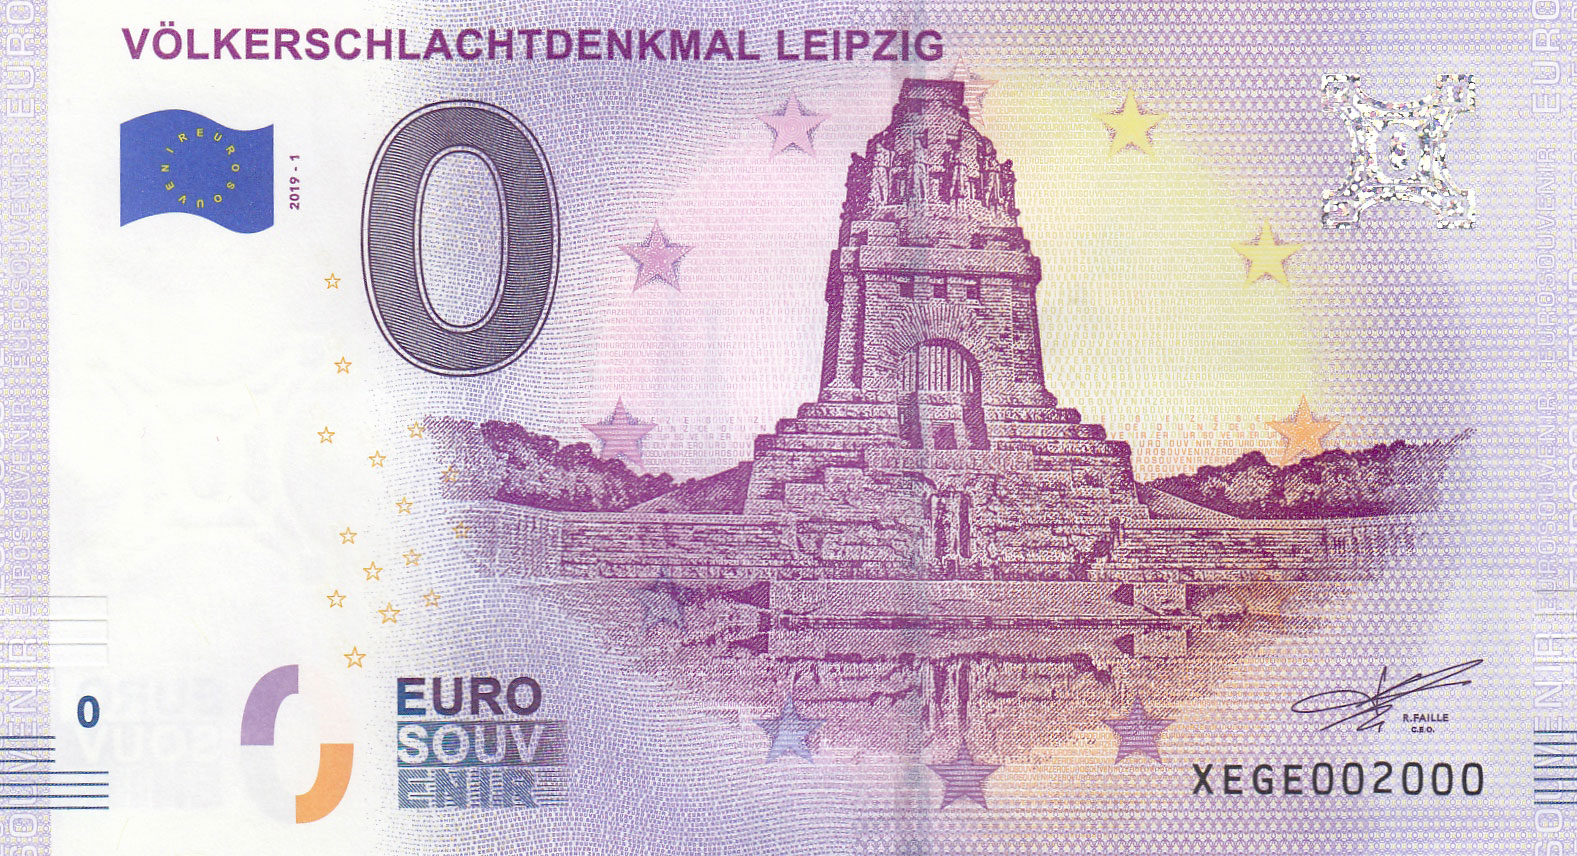 50 Euro Schein In Din A 4 Ausdrucken - KUVERTSHOP - DIN A4 ...